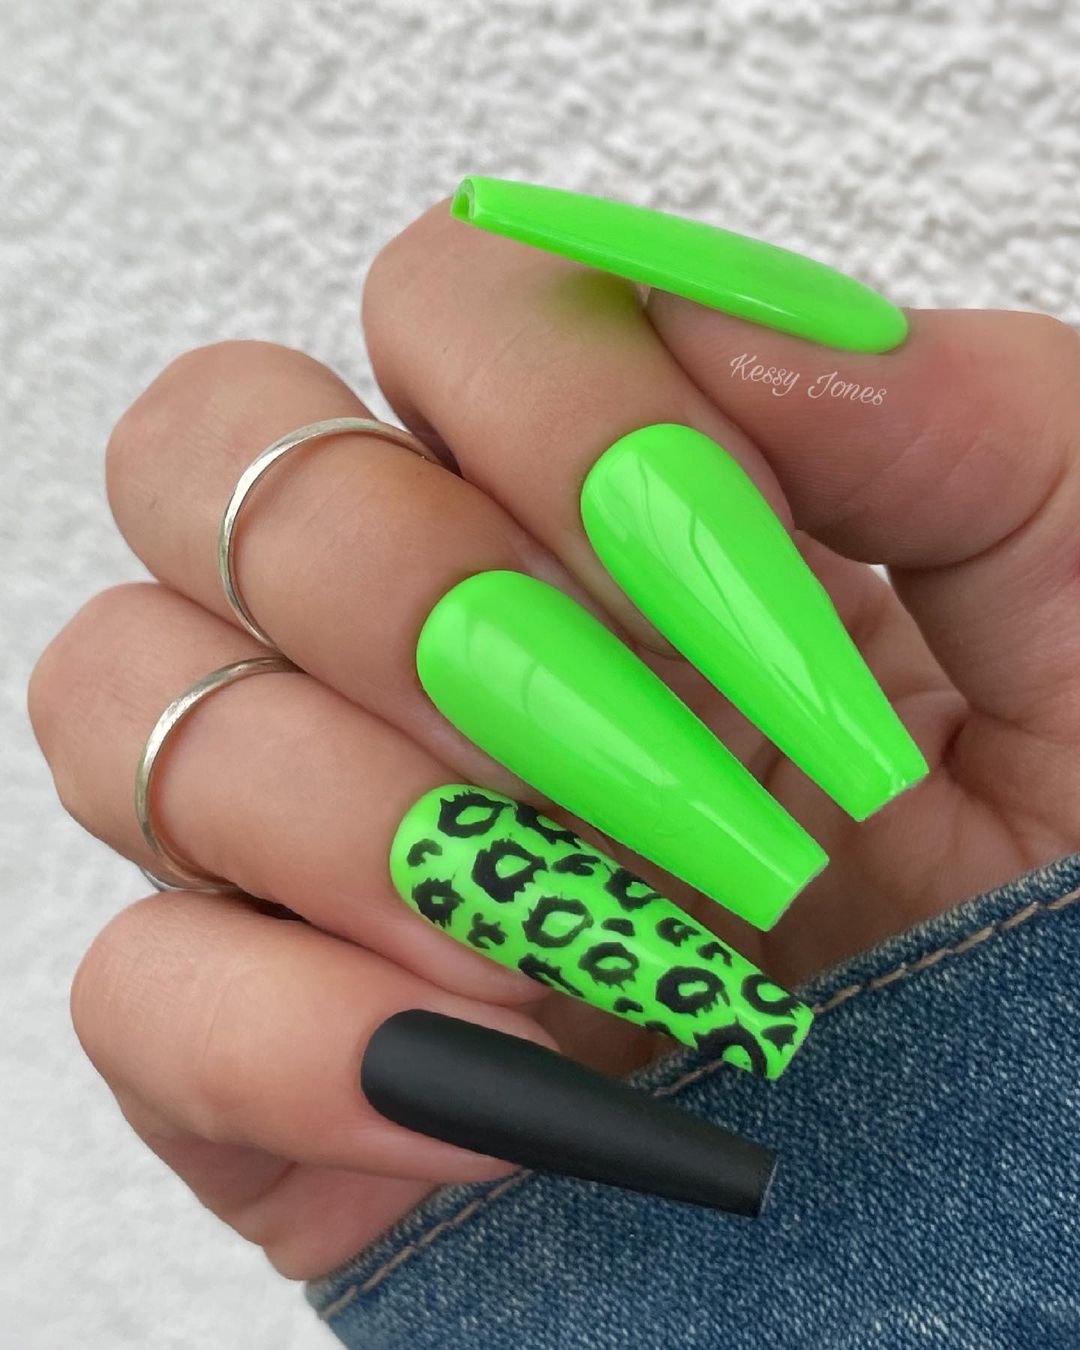 20 SuperBright Neon Green Nail Designs Perfect For Summer / MÉLÒDÝ JACÒB